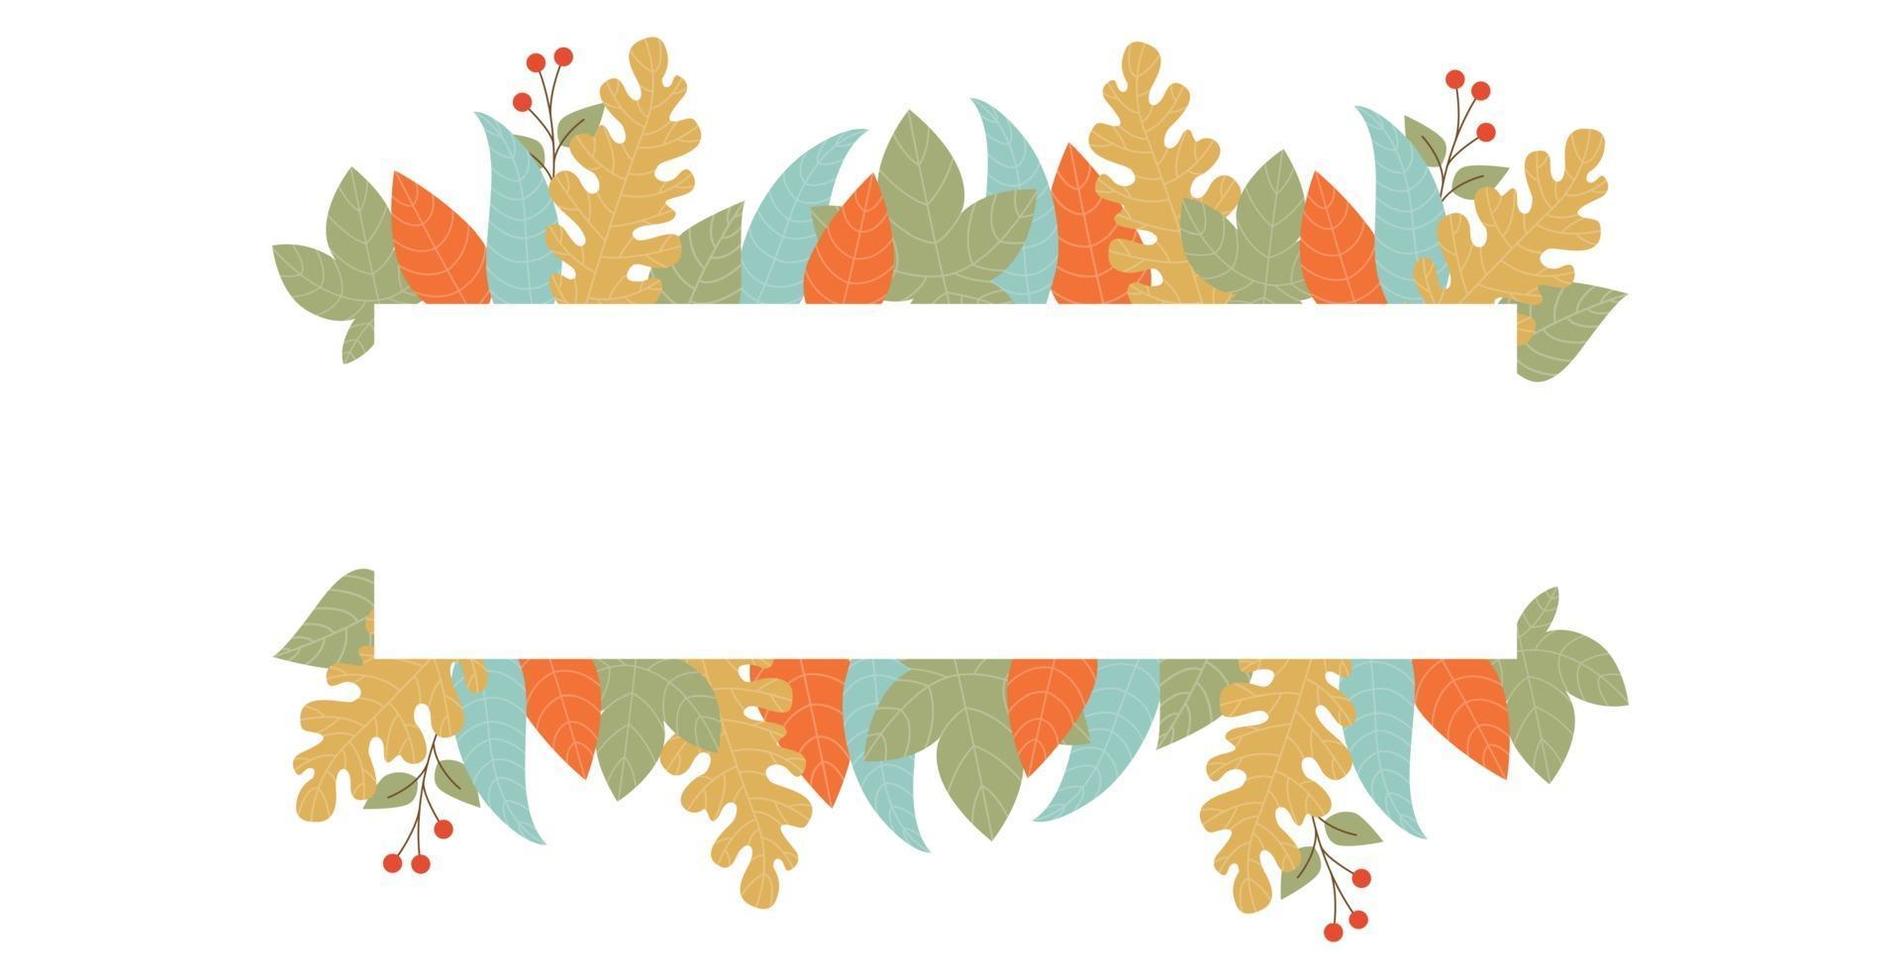 feuillage d'automne réaliste, fond blanc avec un espace pour le texte vecteur